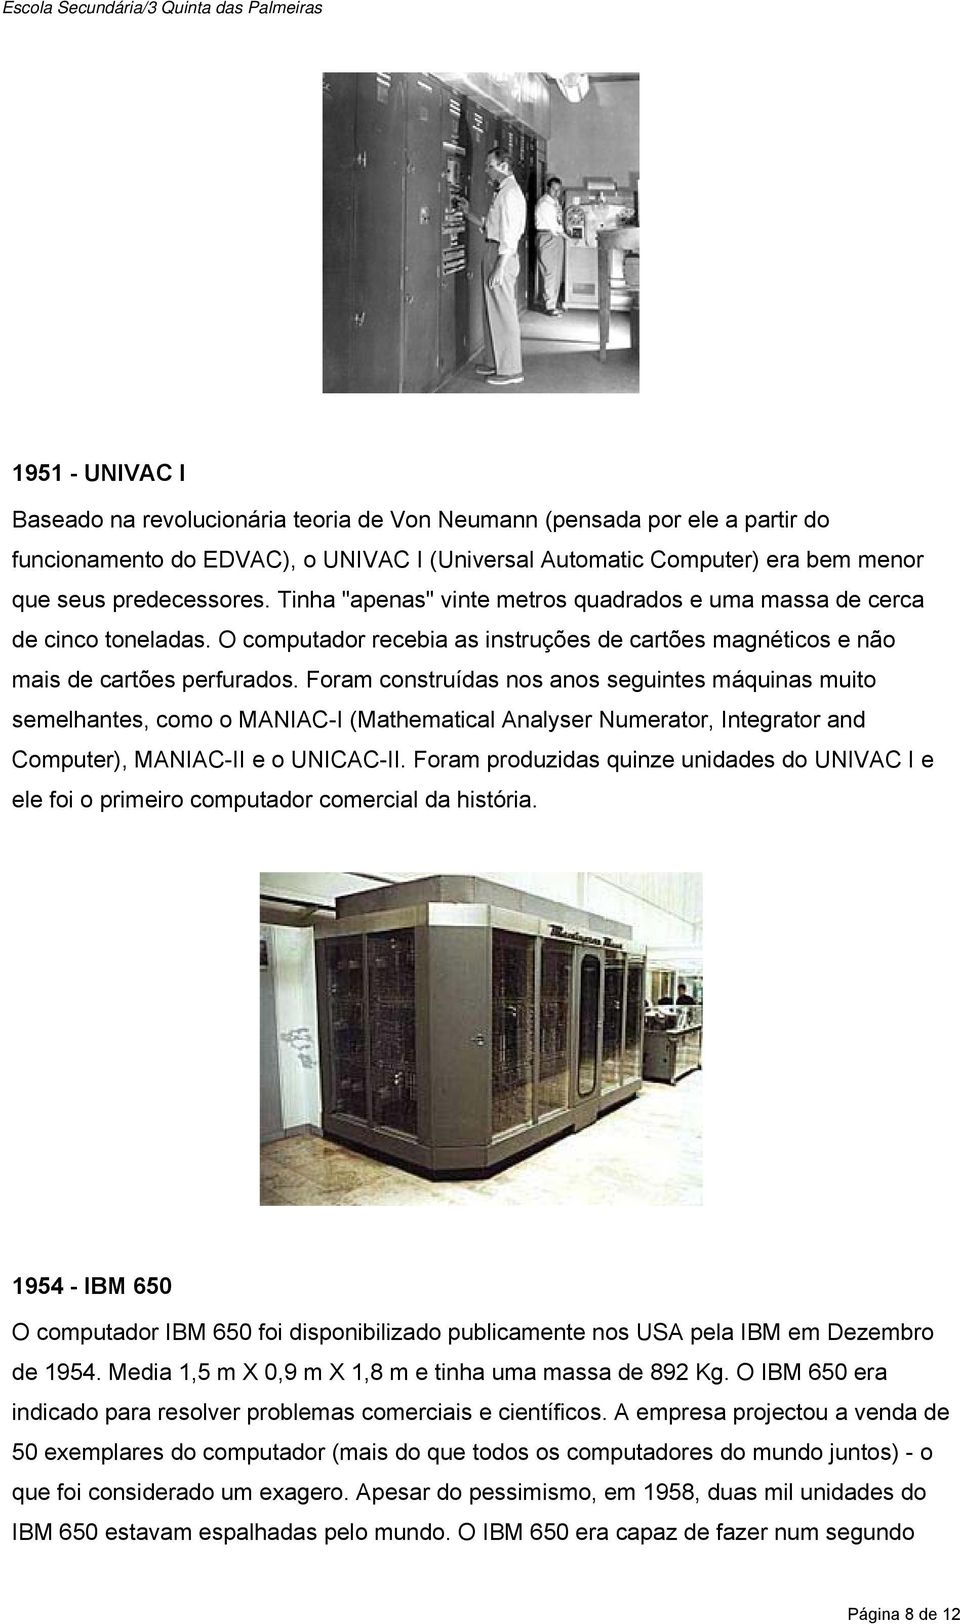 Foram construídas nos anos seguintes máquinas muito semelhantes, como o MANIAC-I (Mathematical Analyser Numerator, Integrator and Computer), MANIAC-II e o UNICAC-II.